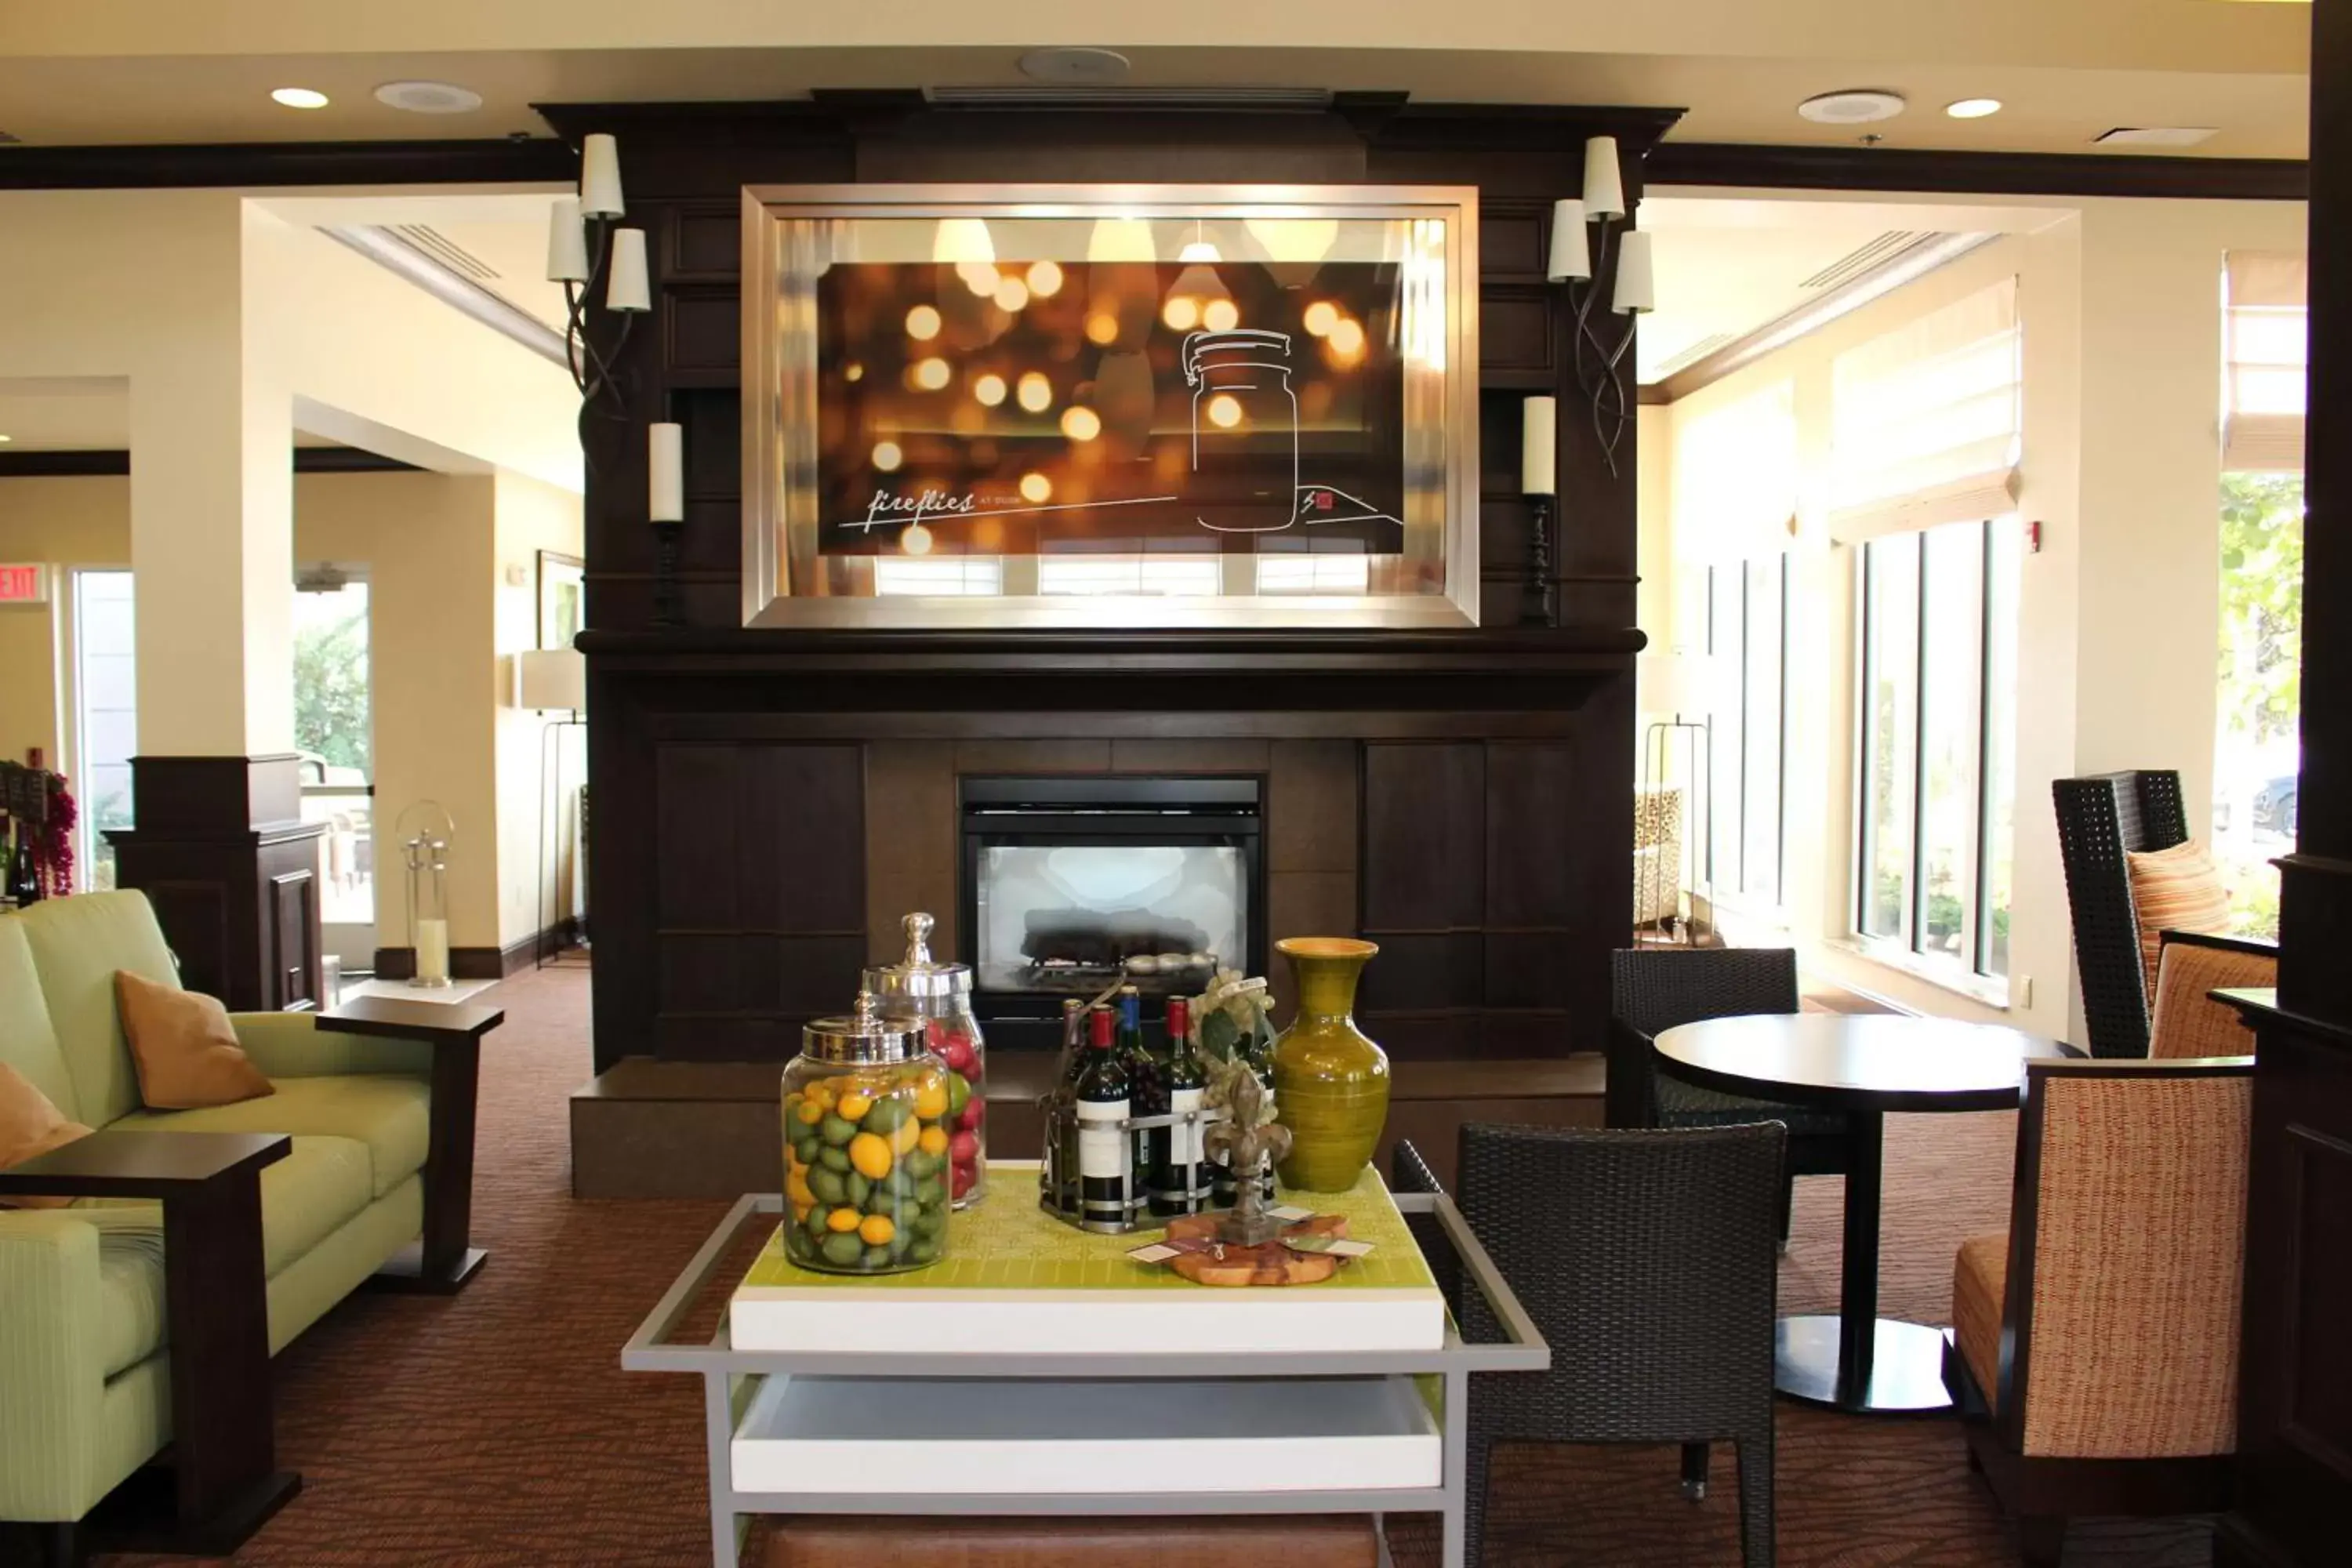 Lobby or reception in Hilton Garden Inn Clovis